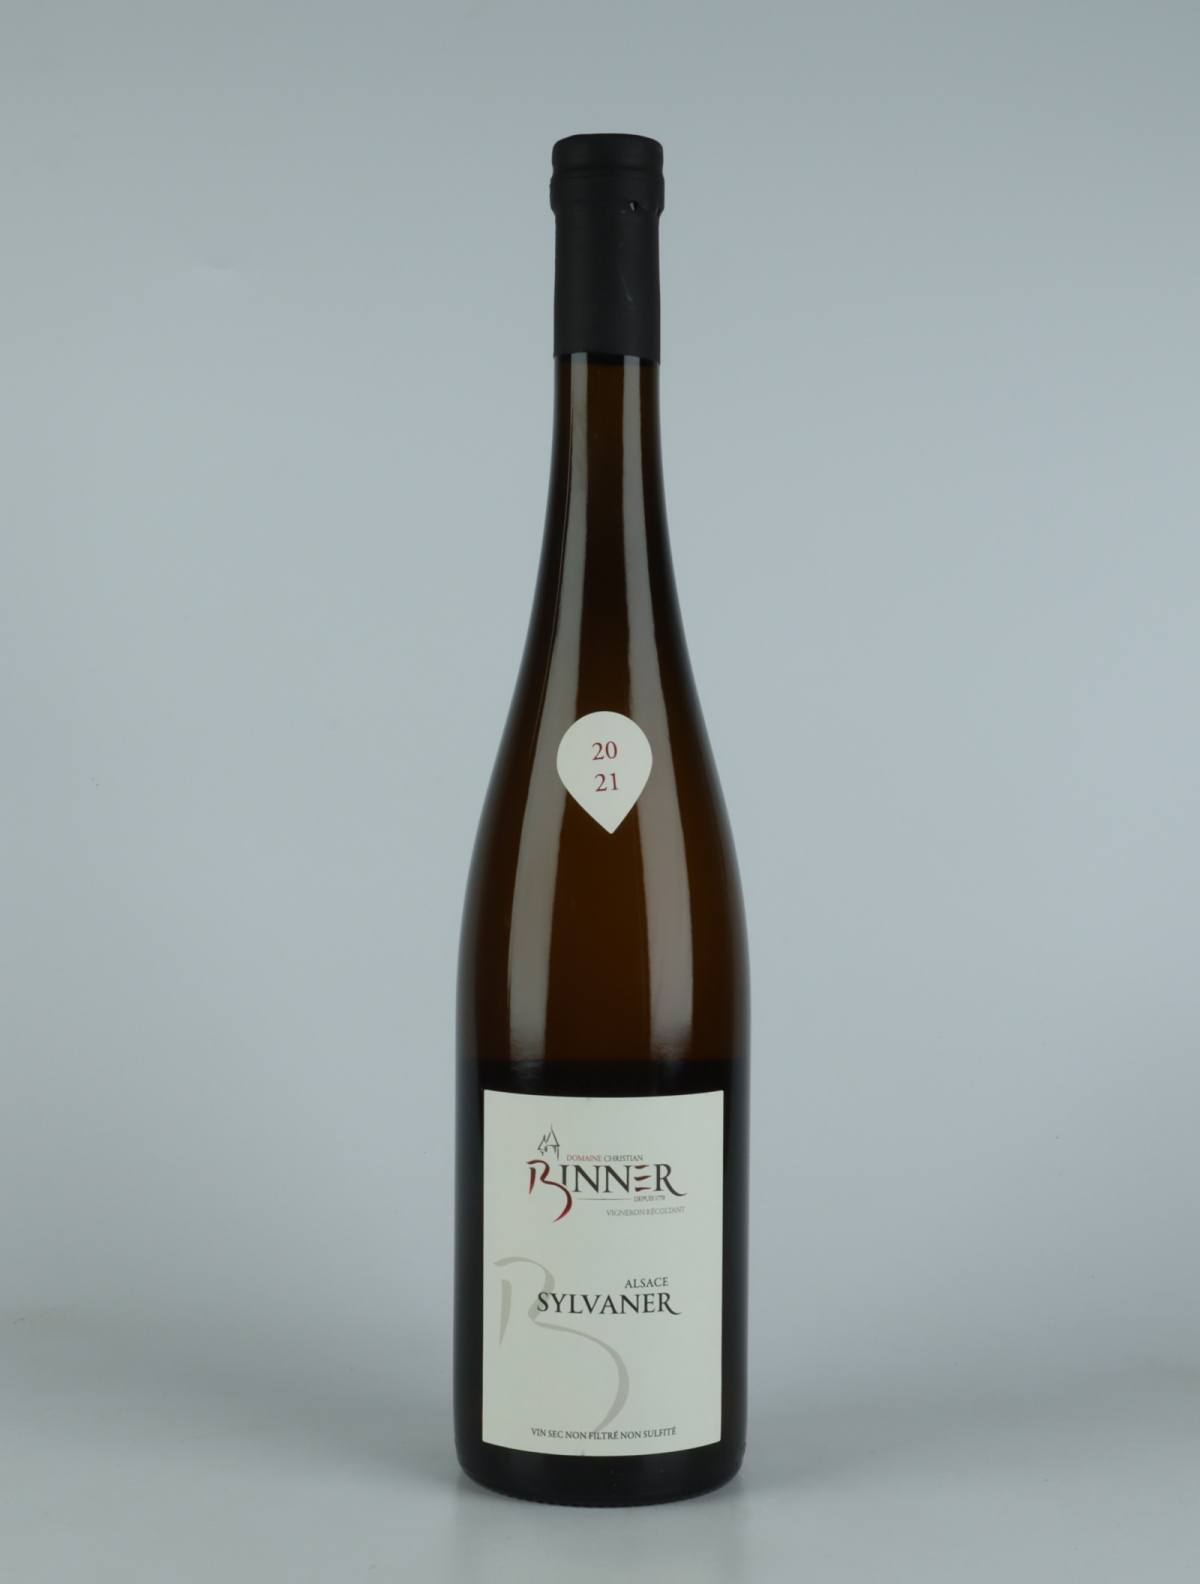 En flaske N.V. Sylvaner (20/21) Hvidvin fra Domaine Christian Binner, Alsace i Frankrig